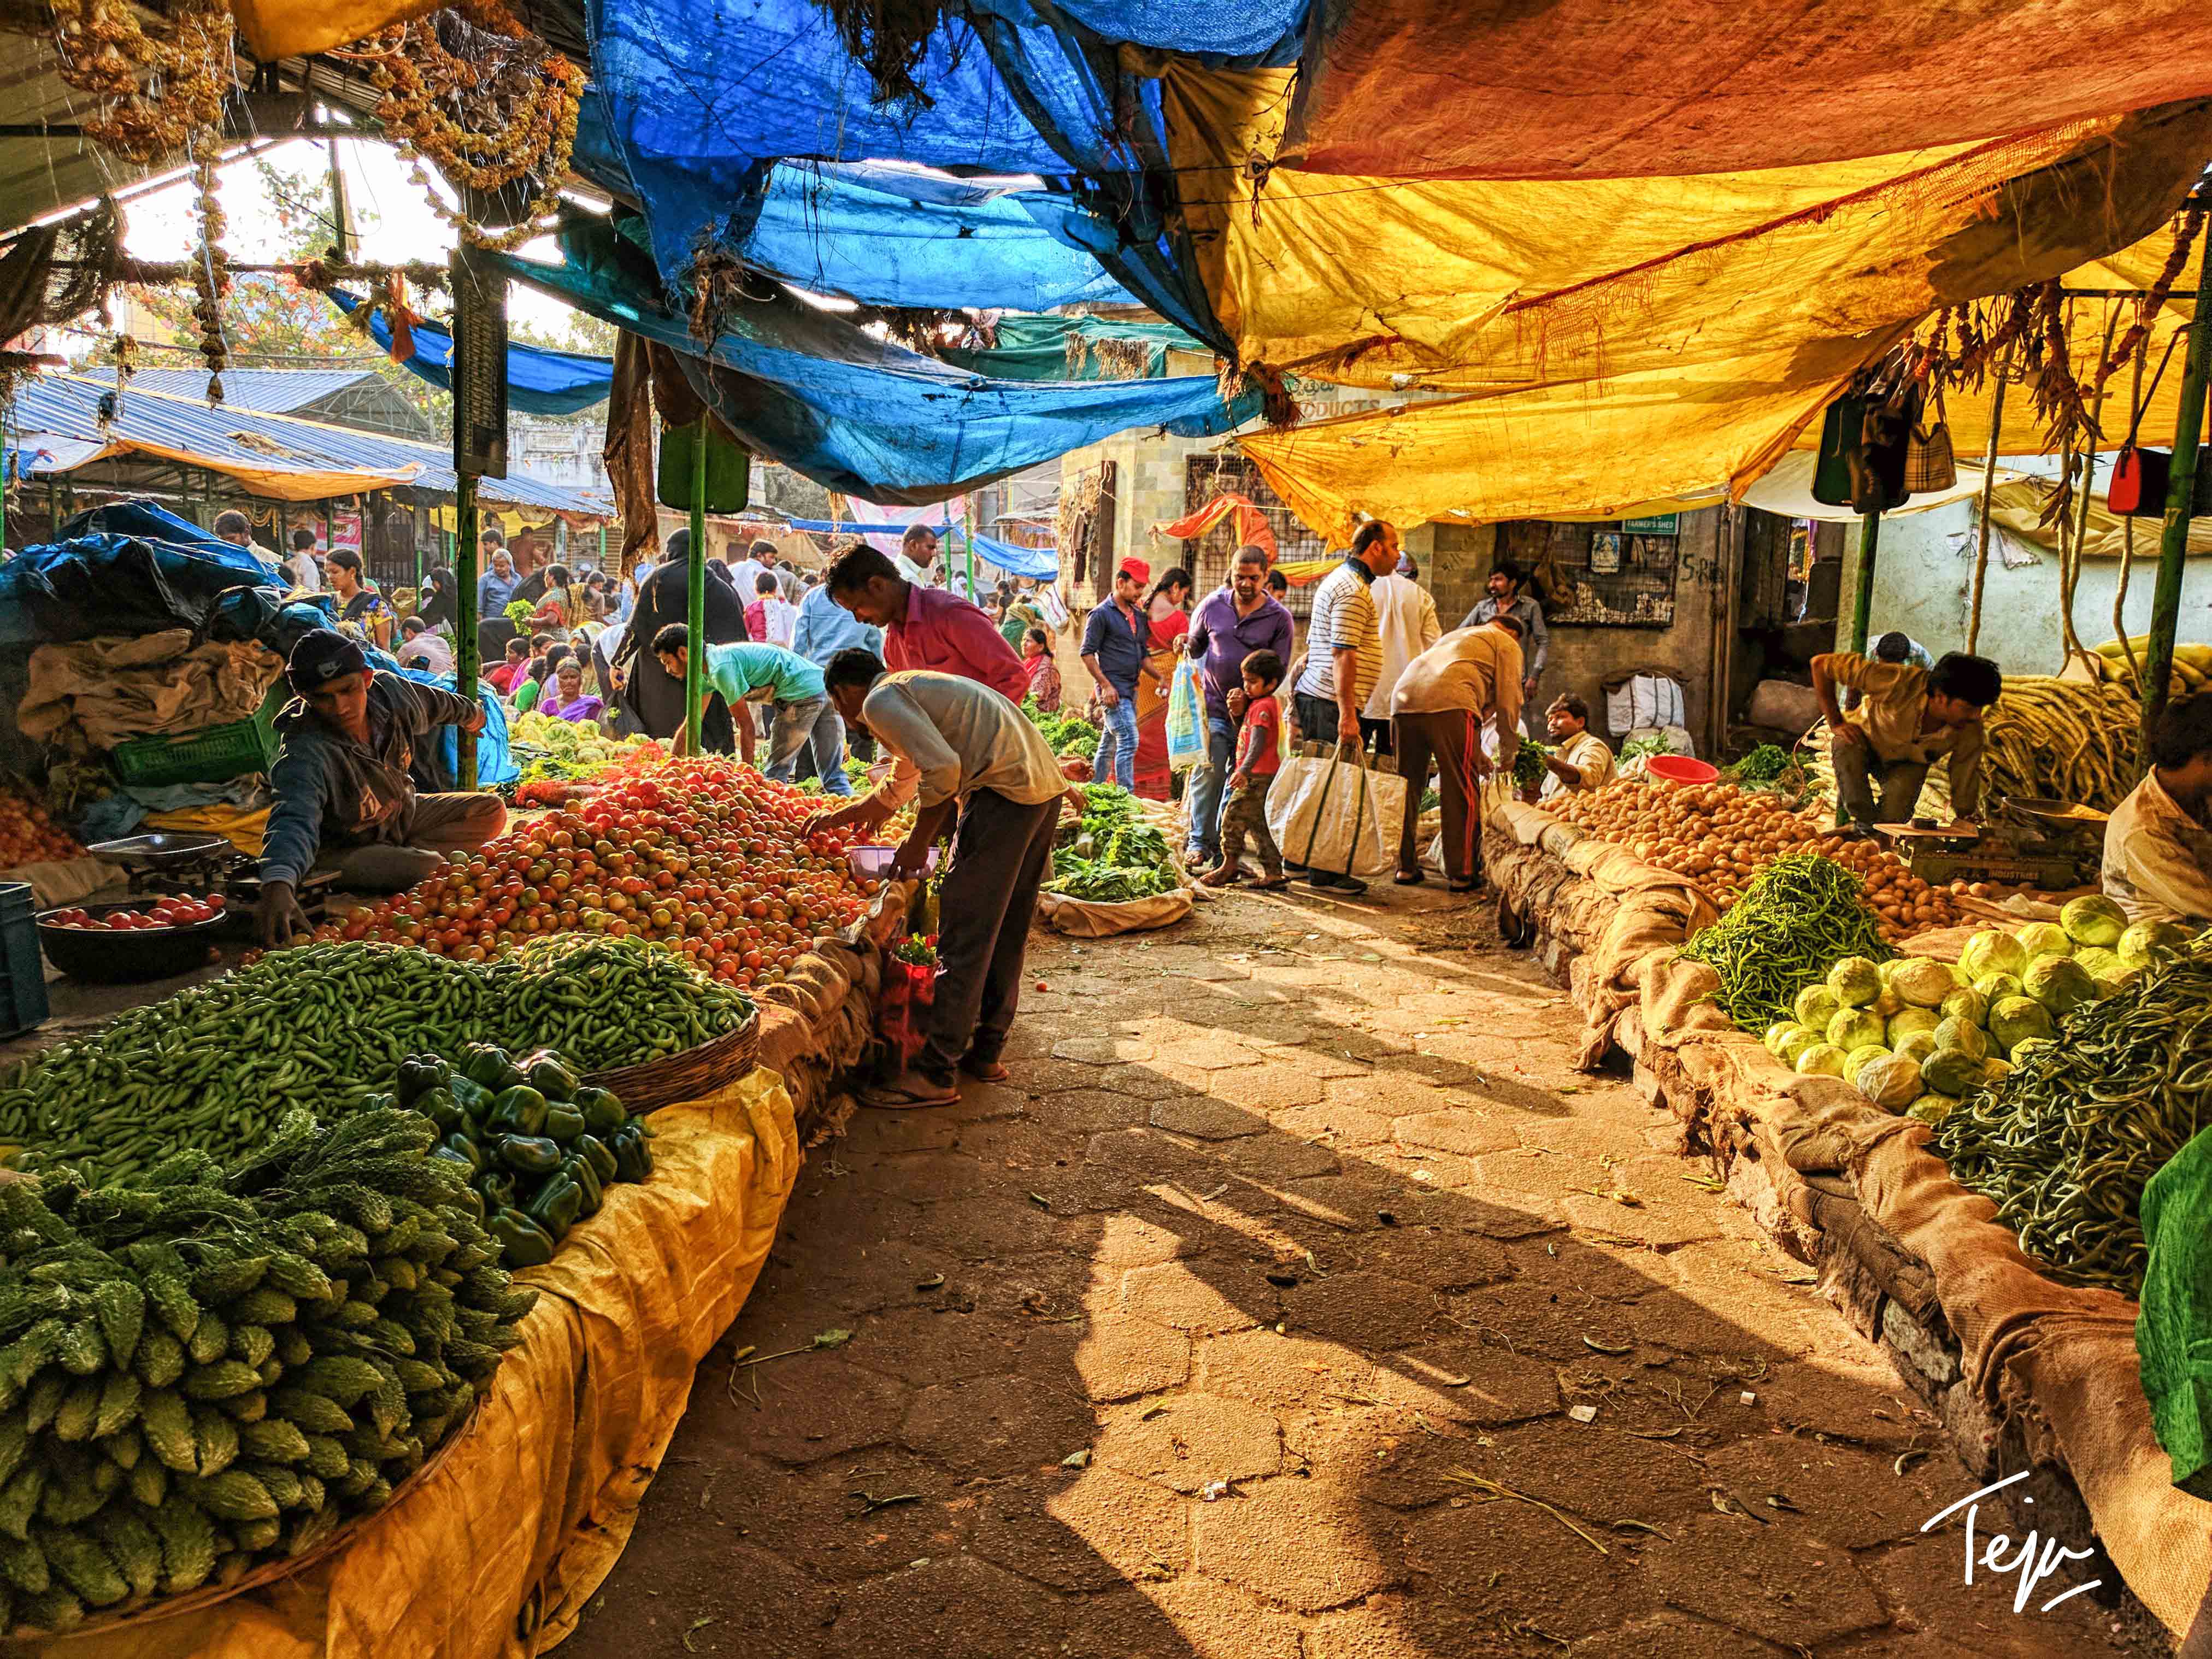 The Bazaars of Hyderabad